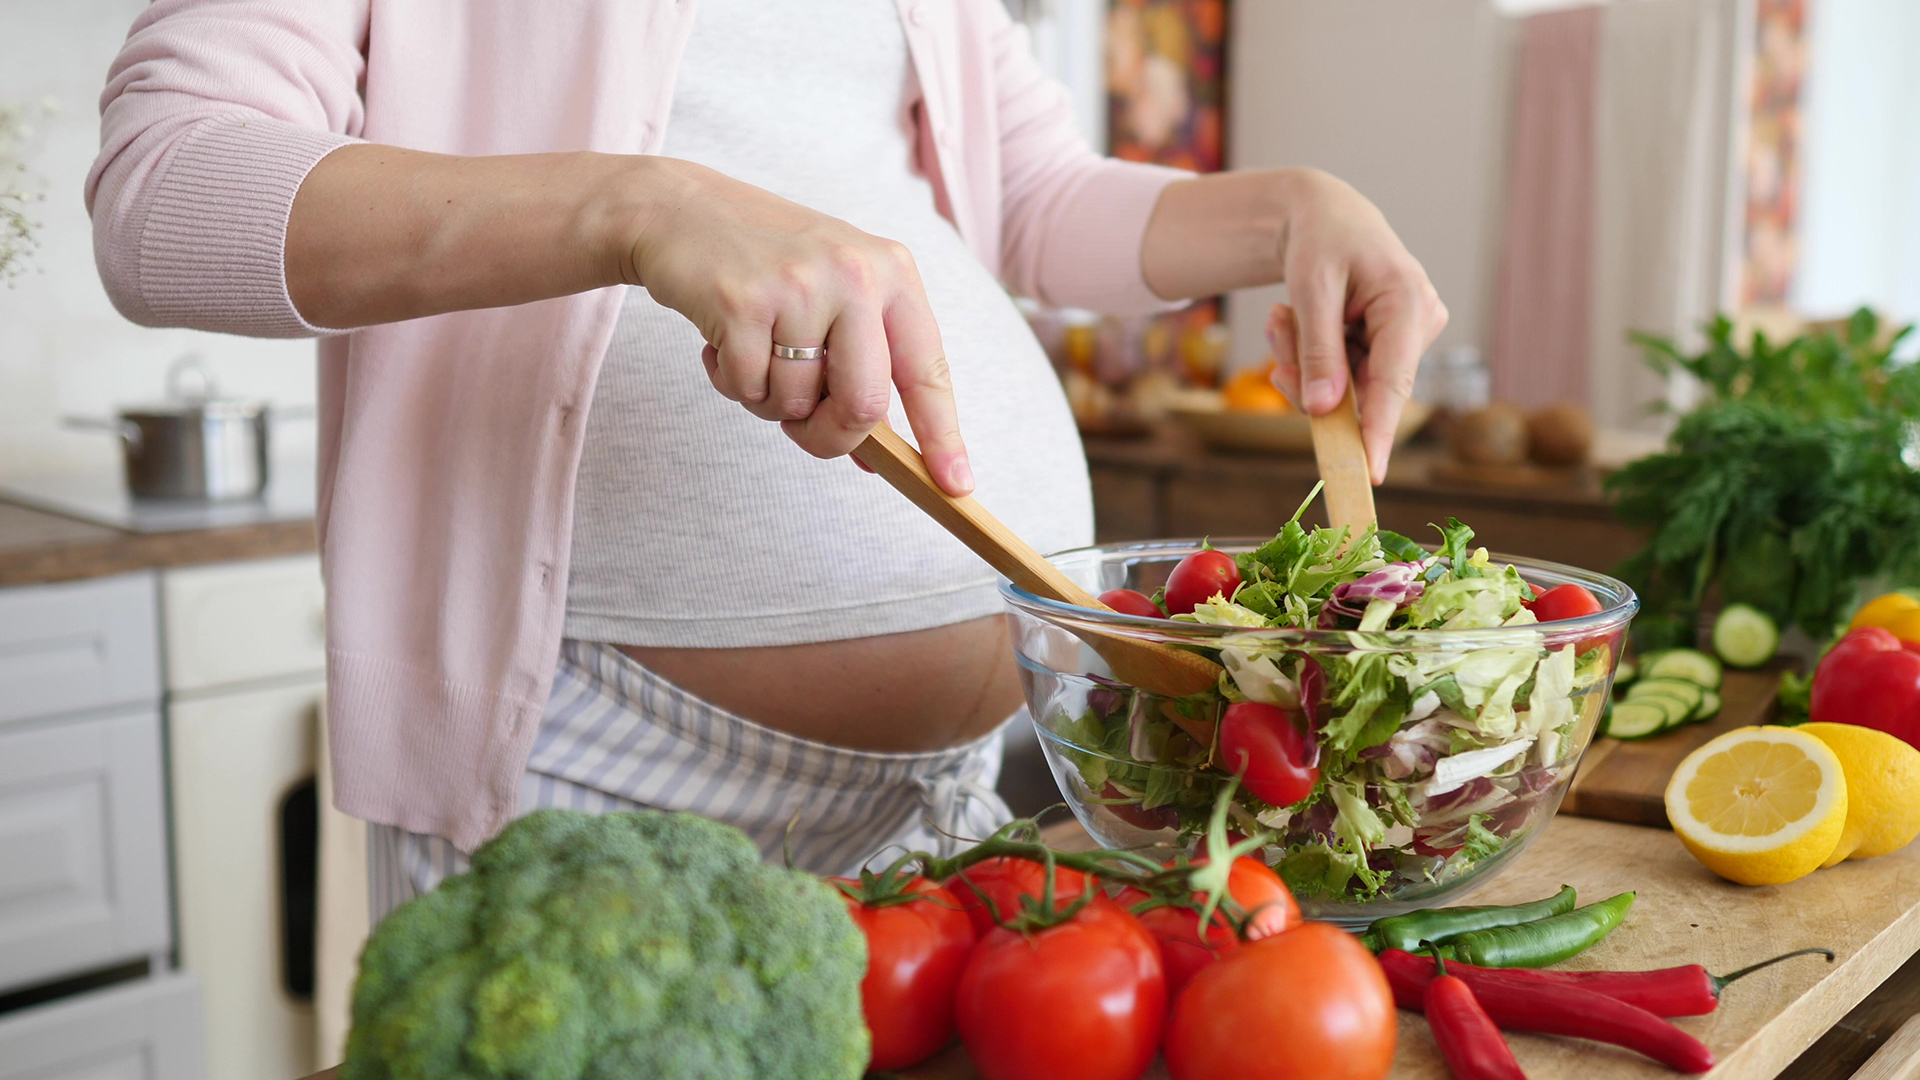 Dinh dưỡng cho bà bầu: Thực phẩm tốt cho bà bầu qua từng giai đoạn